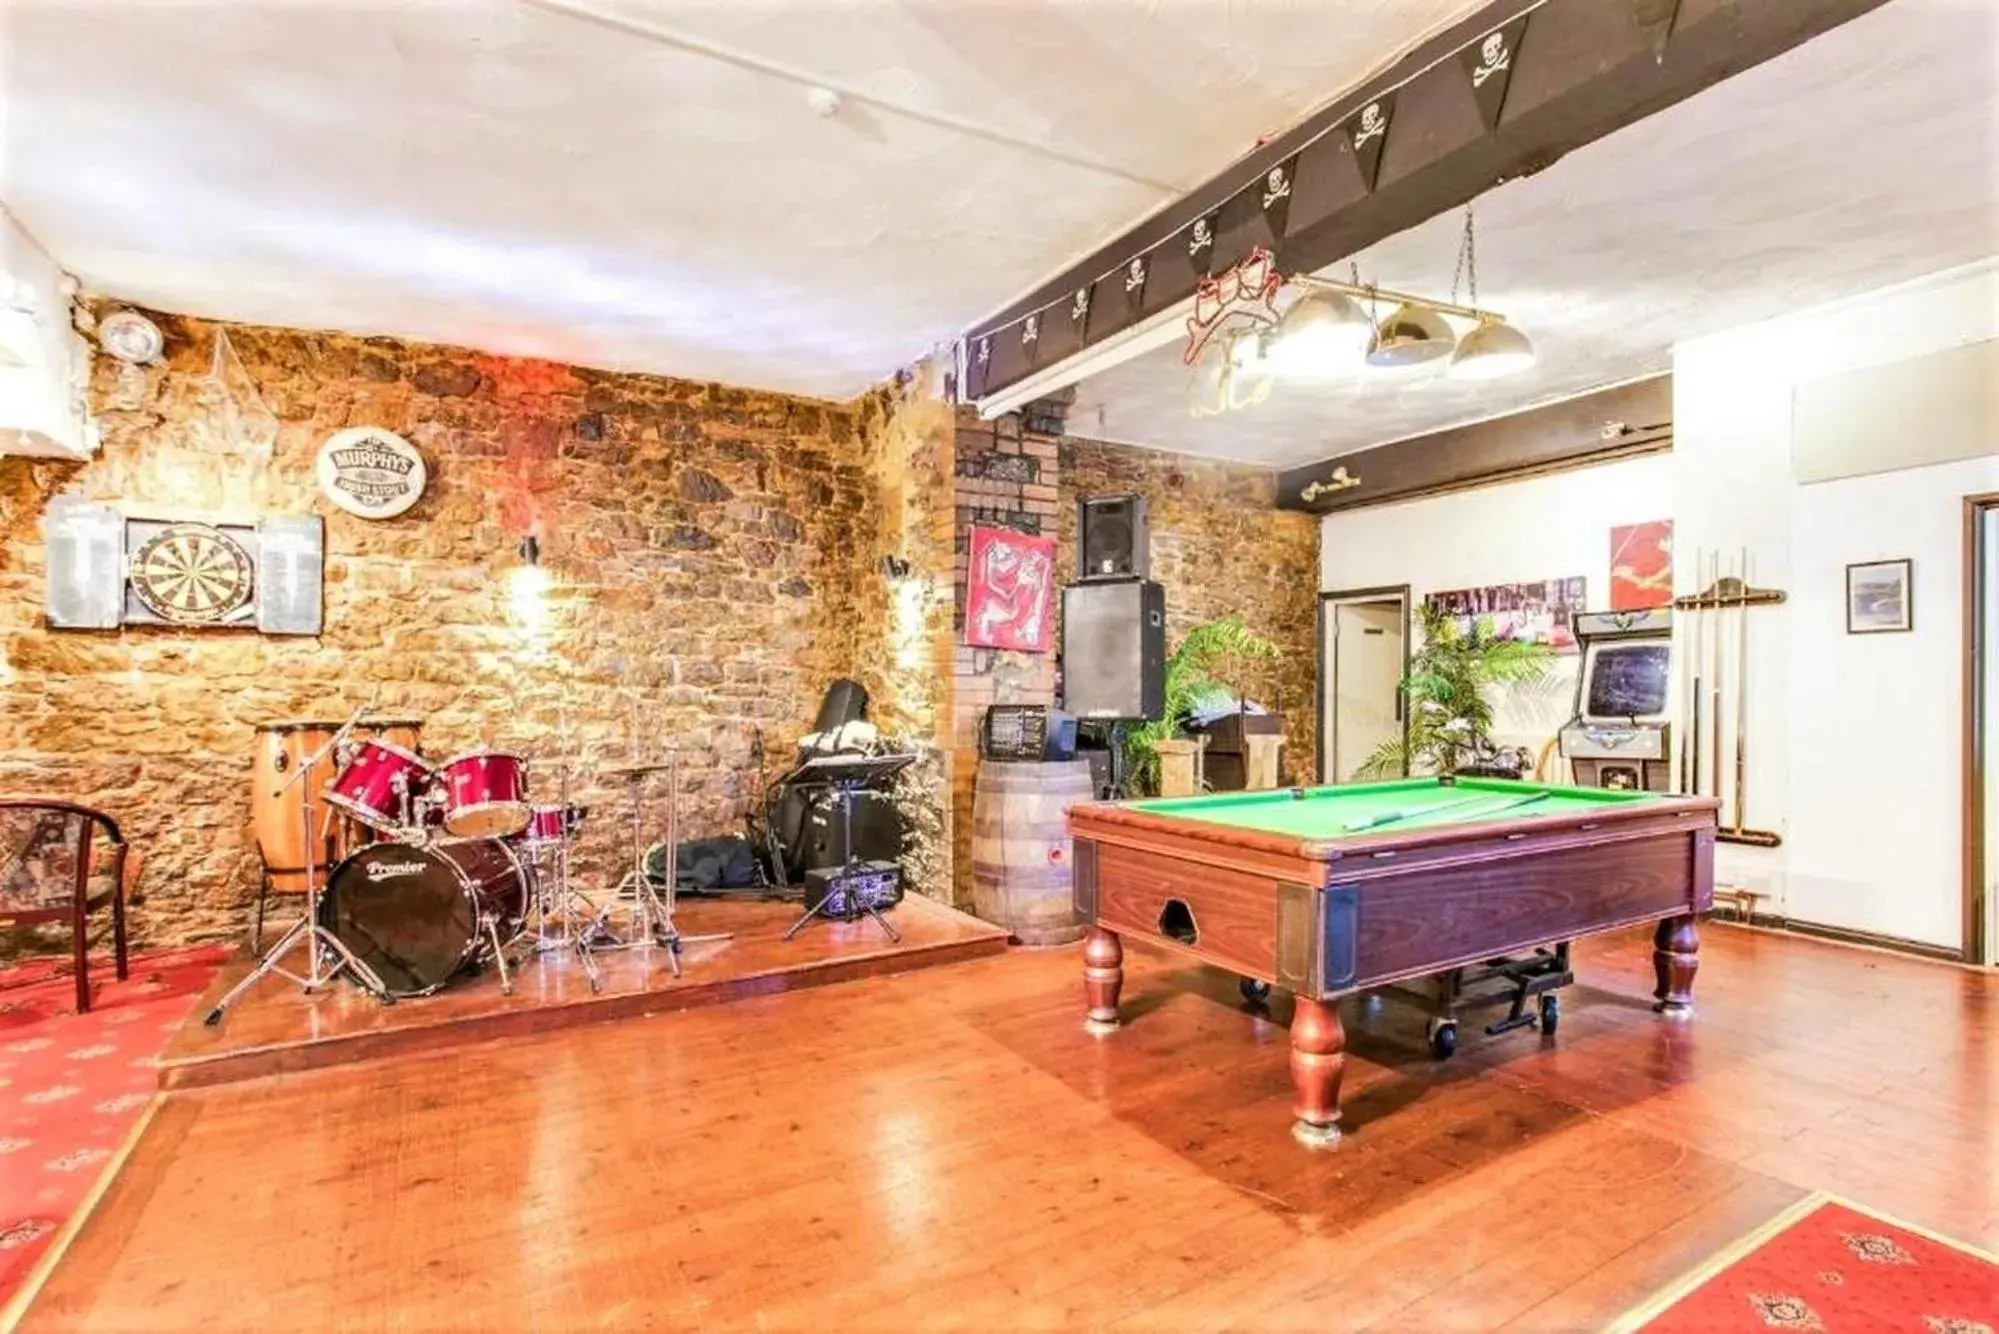 Game Room, Billiards in Yardley Manor Hotel